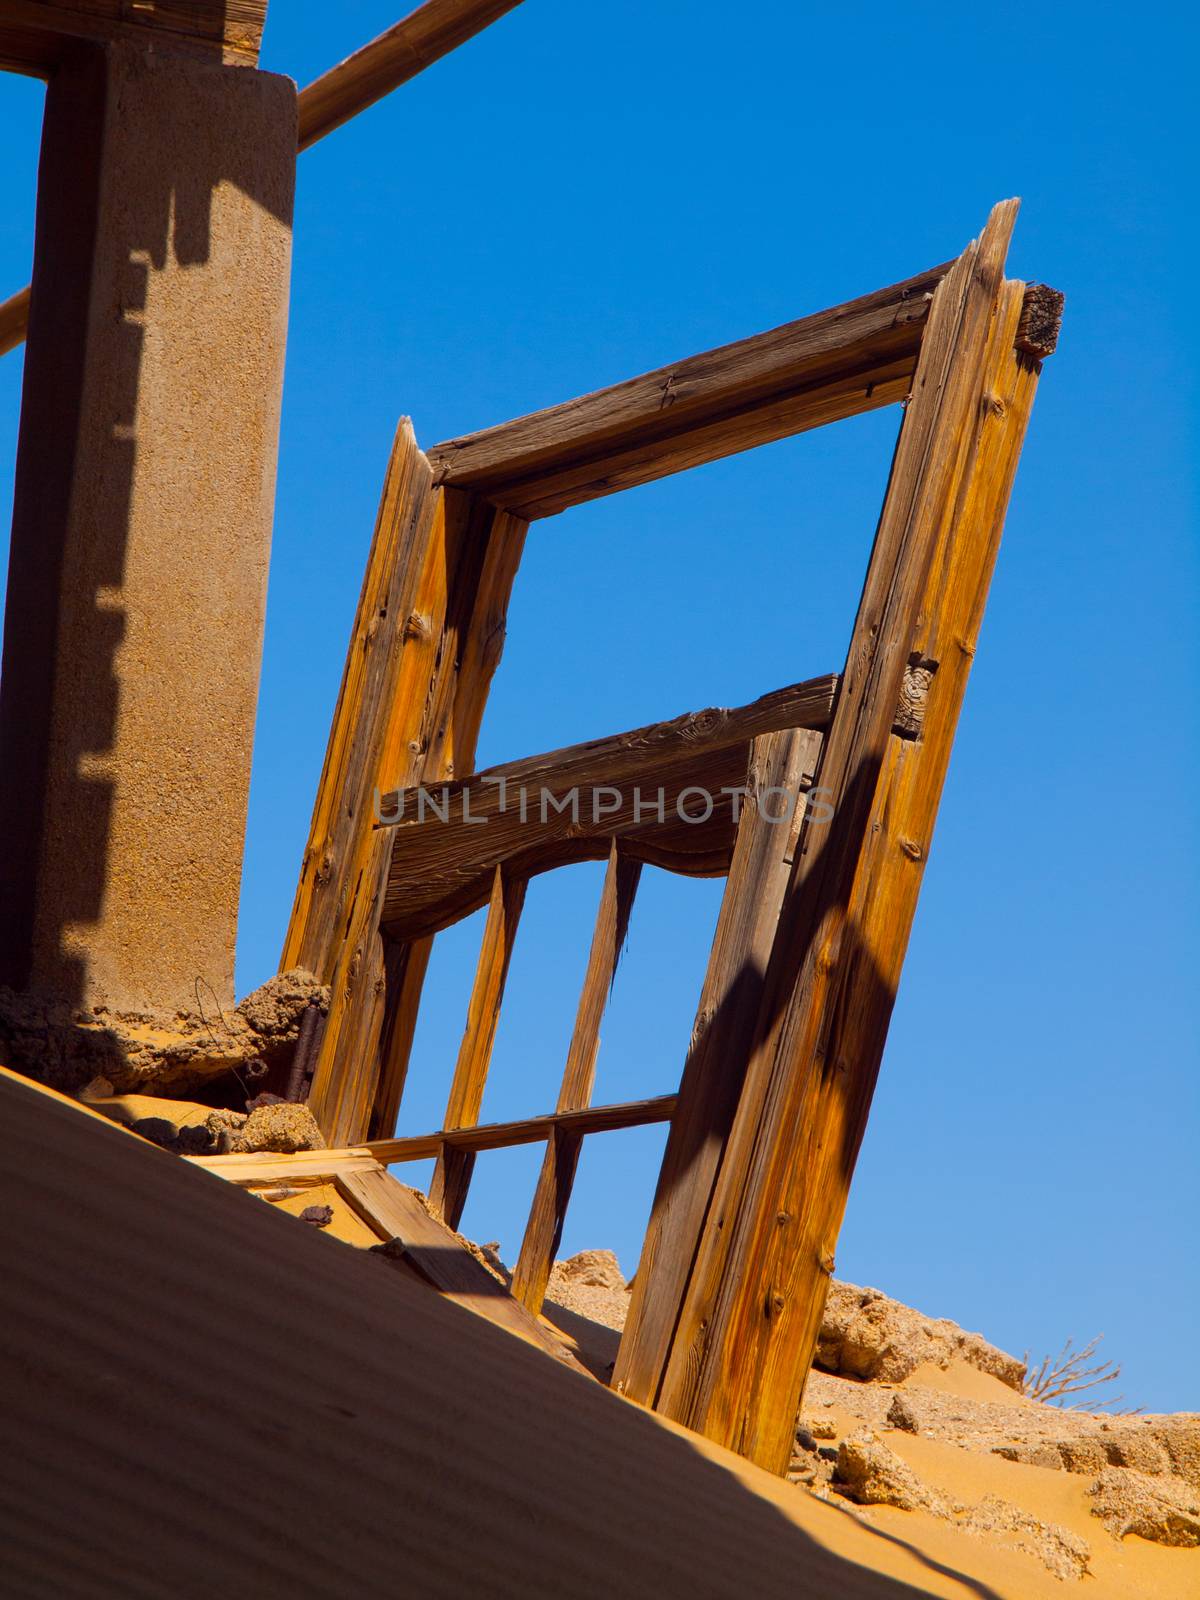 Devasted door in Kolmanskop ghost town (Namibia)